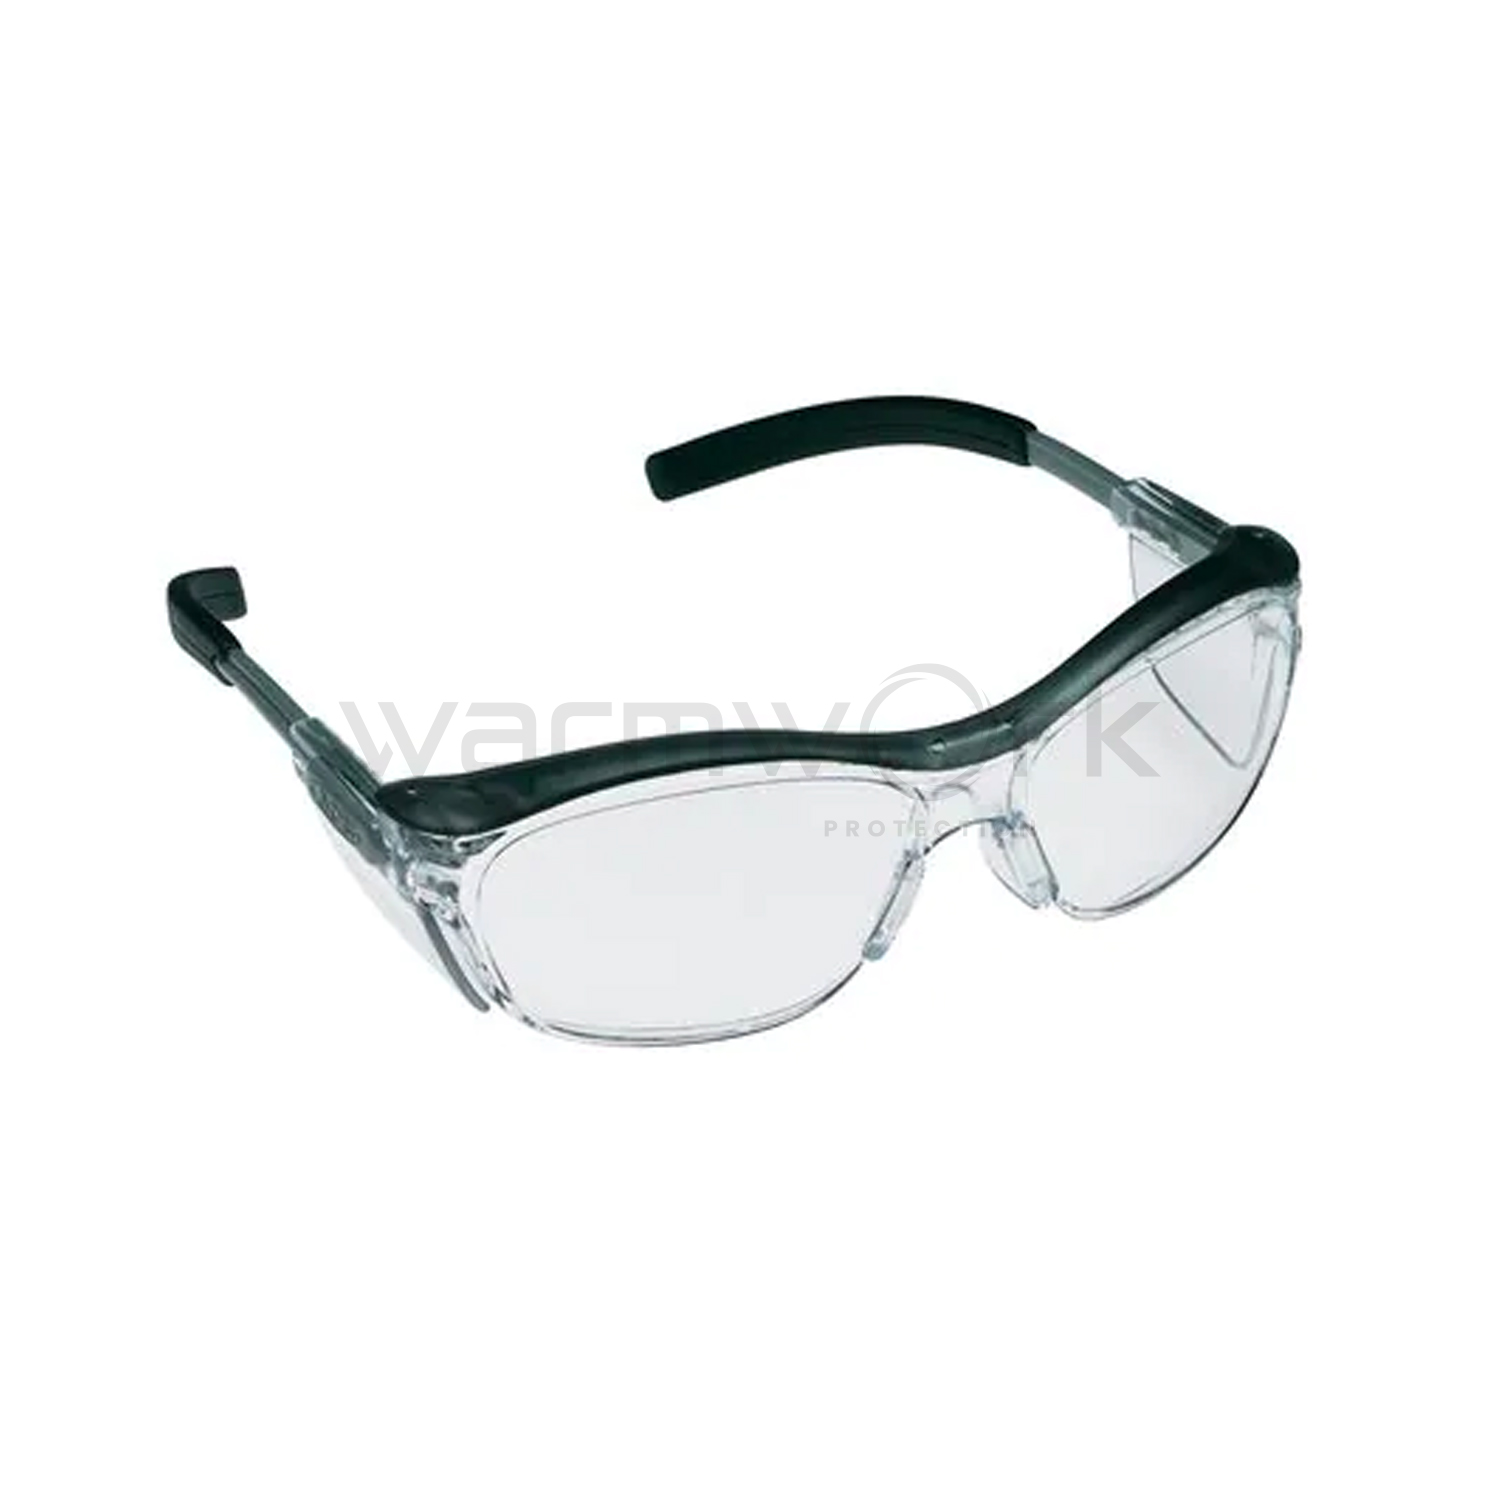 แว่นตานิรภัย รุ่น Nuvo™ 11411 เลนส์ใส กรอบสีเทา